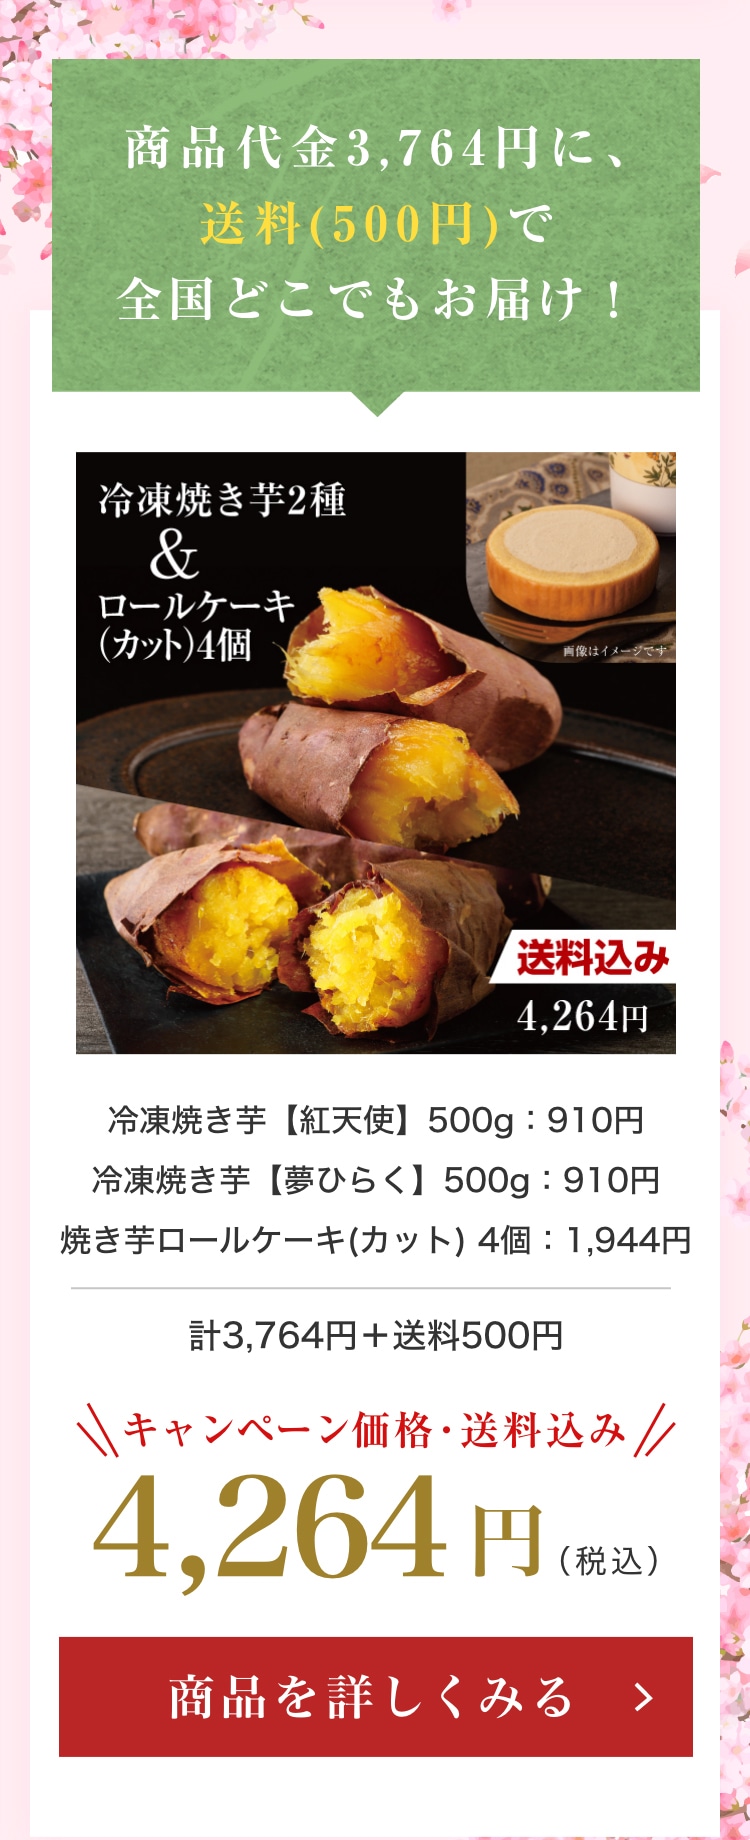 冷凍焼き芋紅天使 500g + 冷凍焼き芋夢ひらく 500g + 焼き芋ロールケーキ(カット)４個